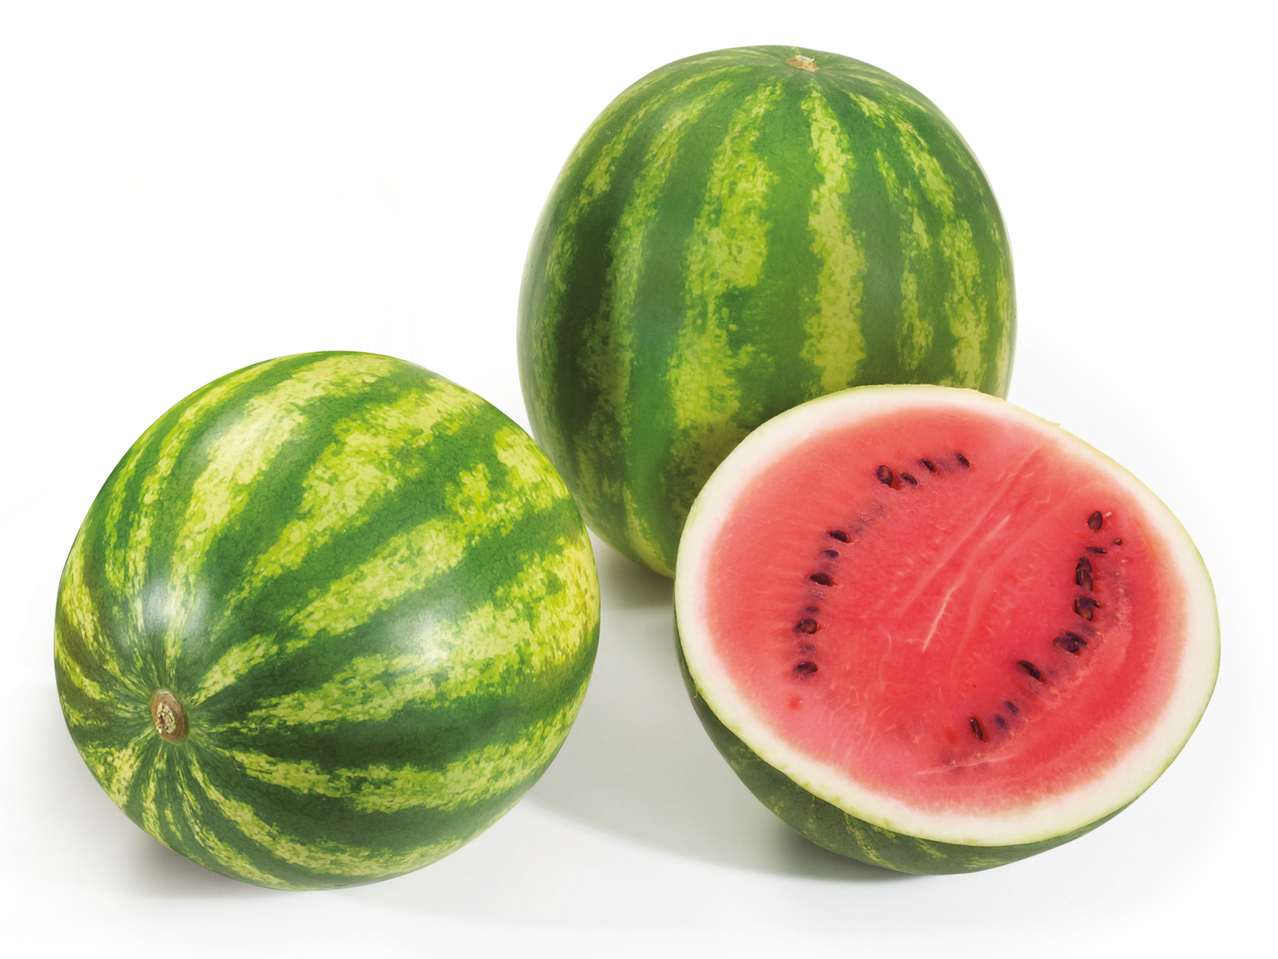 Kernefattig vandmelon